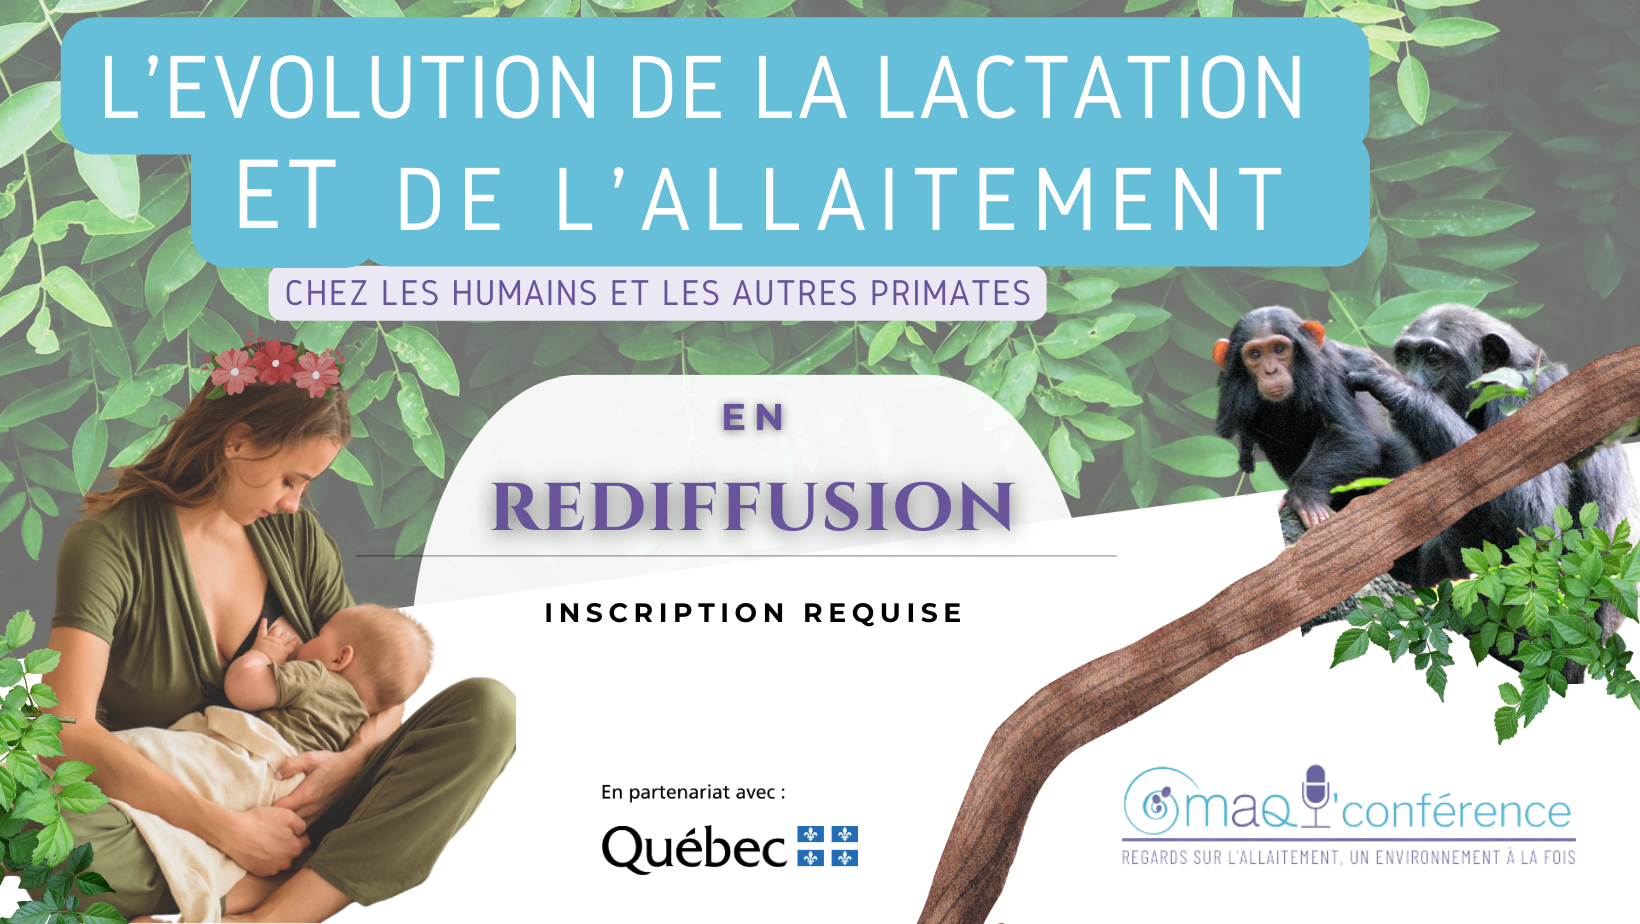 REDIFFUSION  - MAQ'conférence | L'évolution de la lactation et de l'allaitement chez les humains et les autres primates